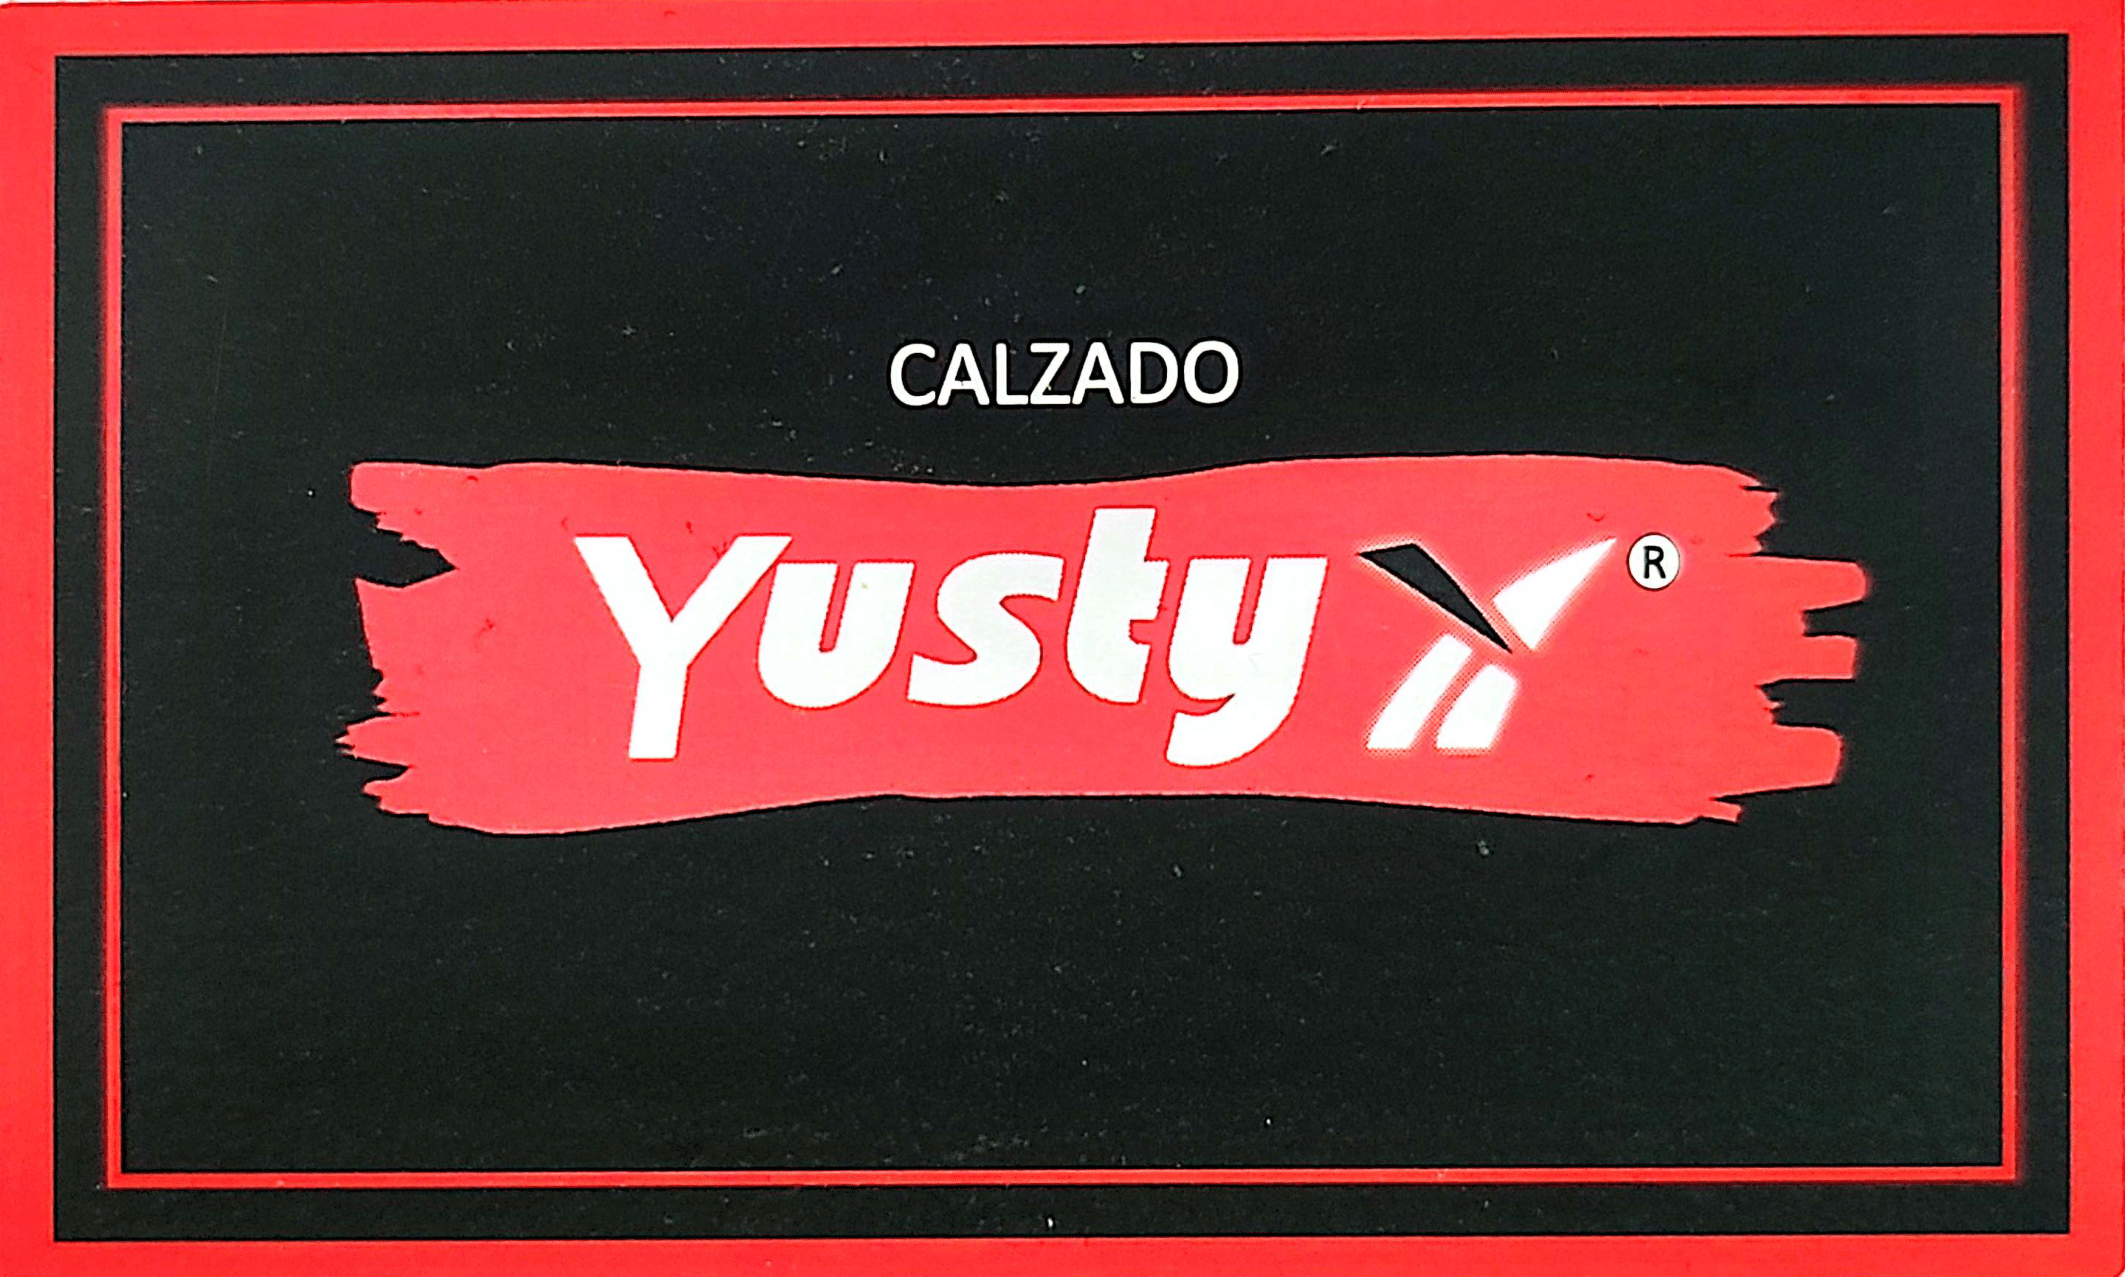 Calzado Yusty